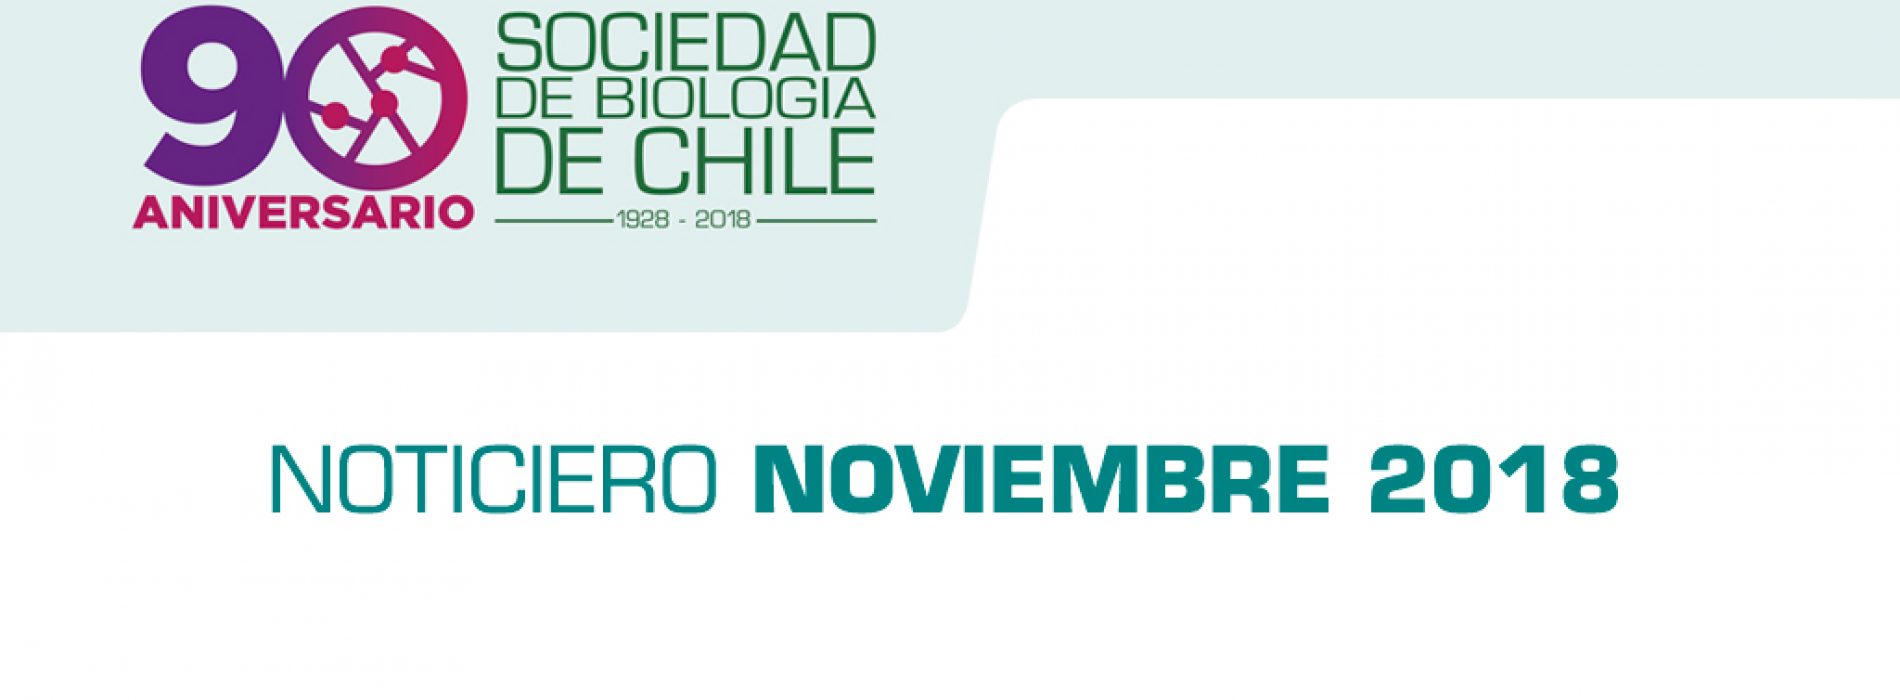 Noticiero Mes de Noviembre 2018, Sociedad de Biología de Chile